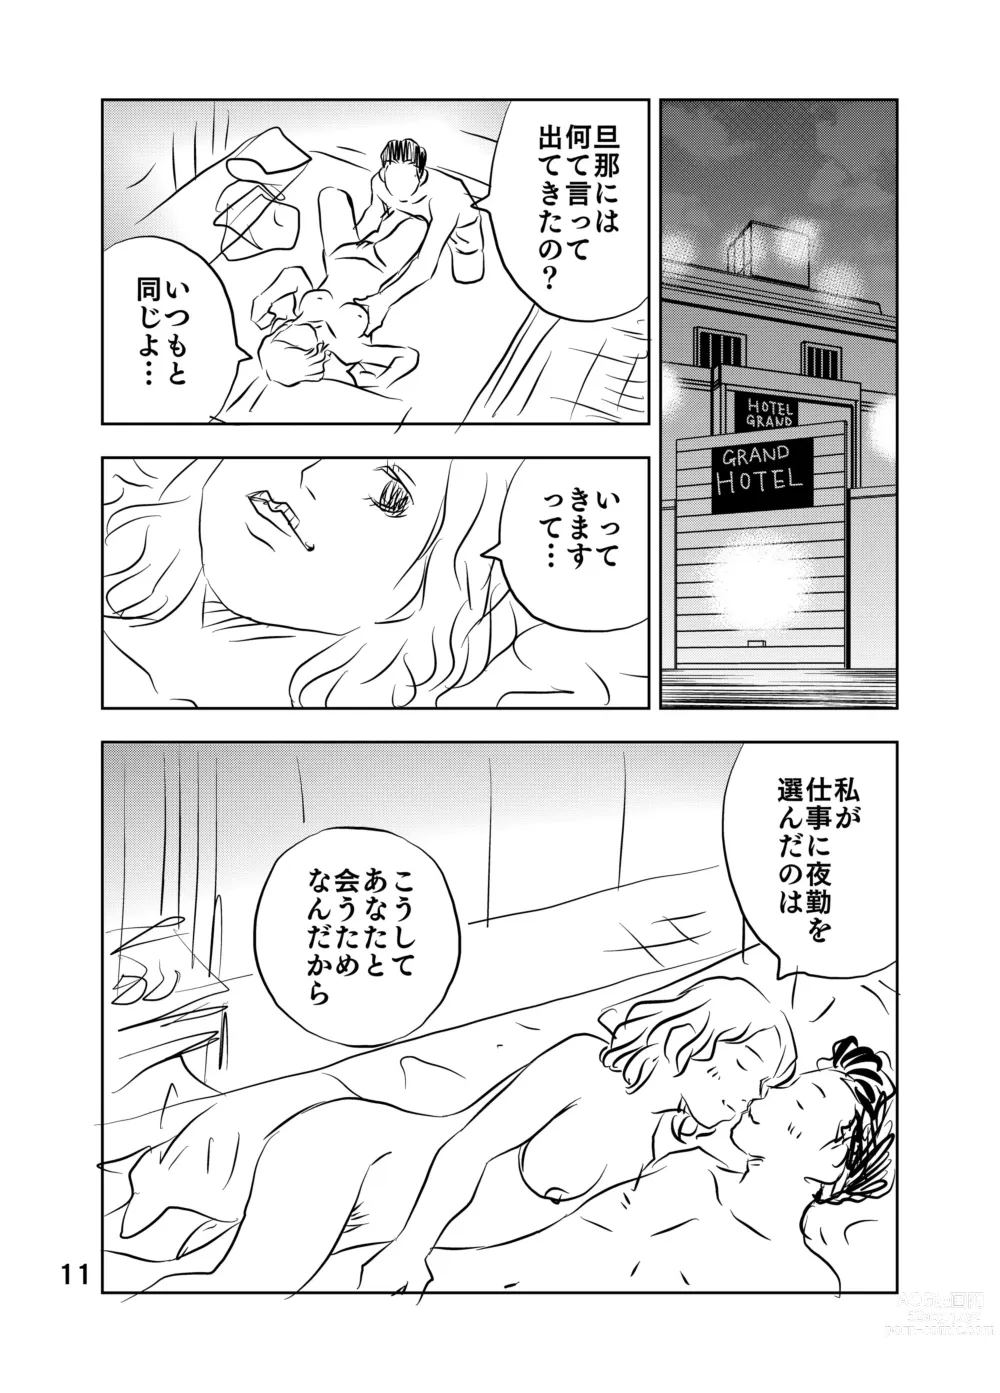 Page 25 of doujinshi Zurui Hito-tachi 2